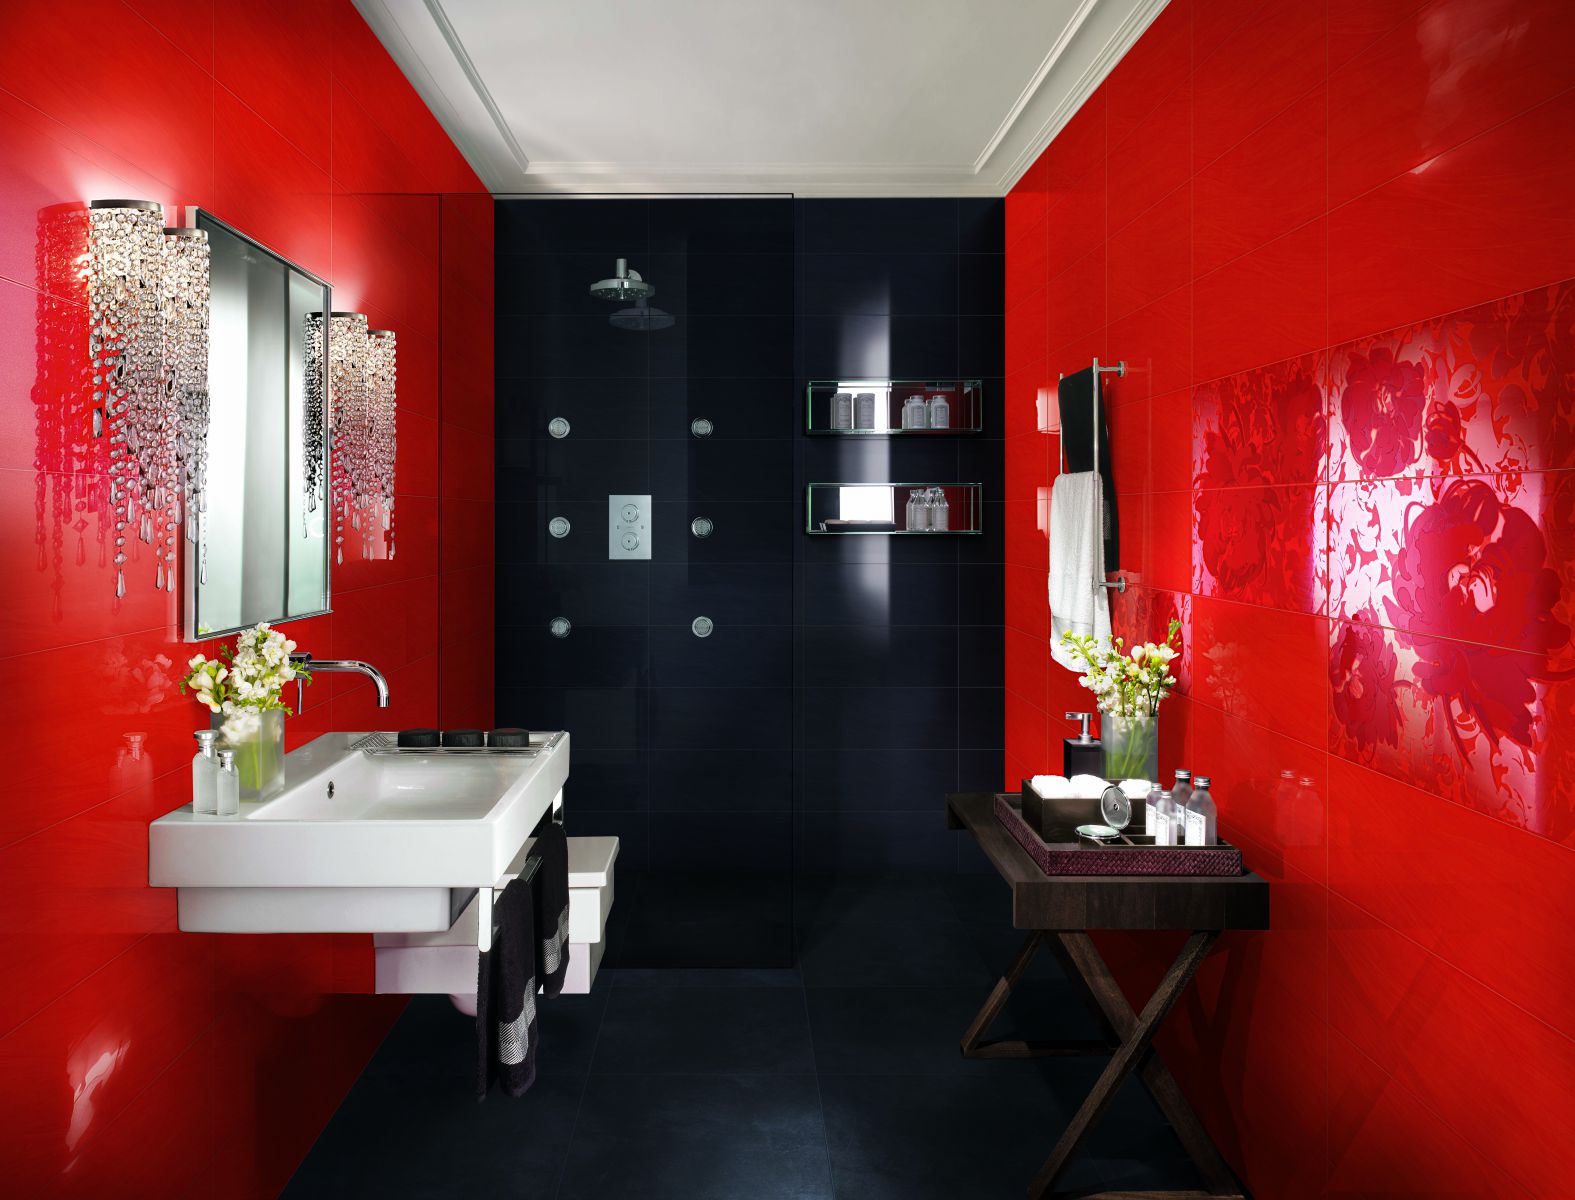 Дизайн ванных комнат. Что важнее: практичность или красота?